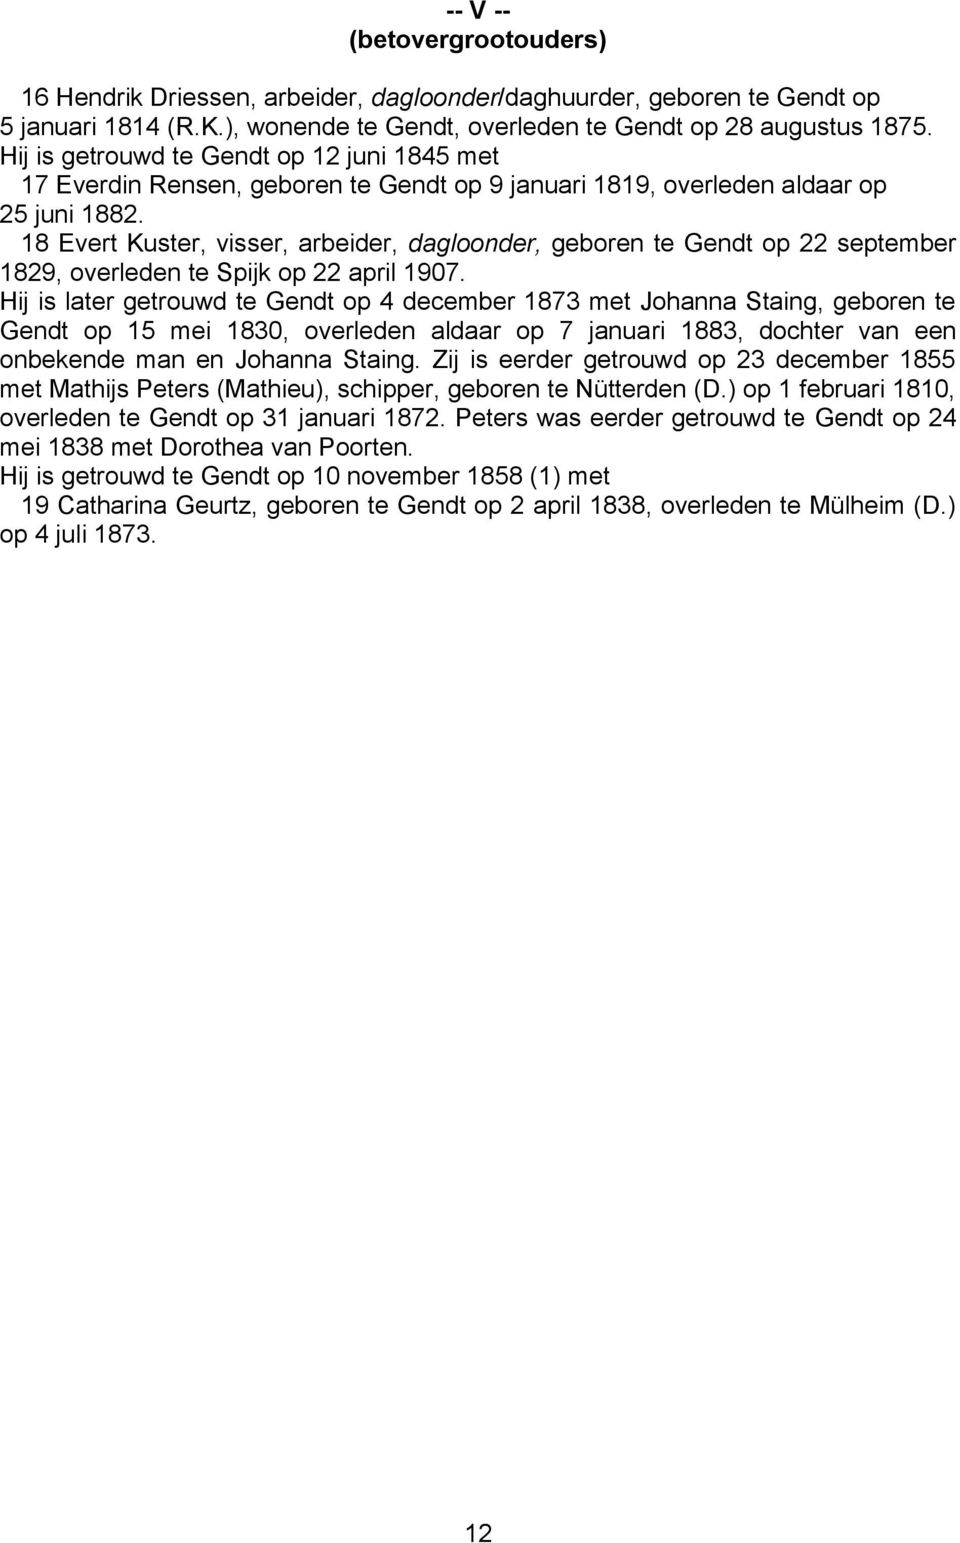 18 Evert Kuster, visser, arbeider, dagloonder, geboren te Gendt op 22 september 1829, overleden te Spijk op 22 april 1907.